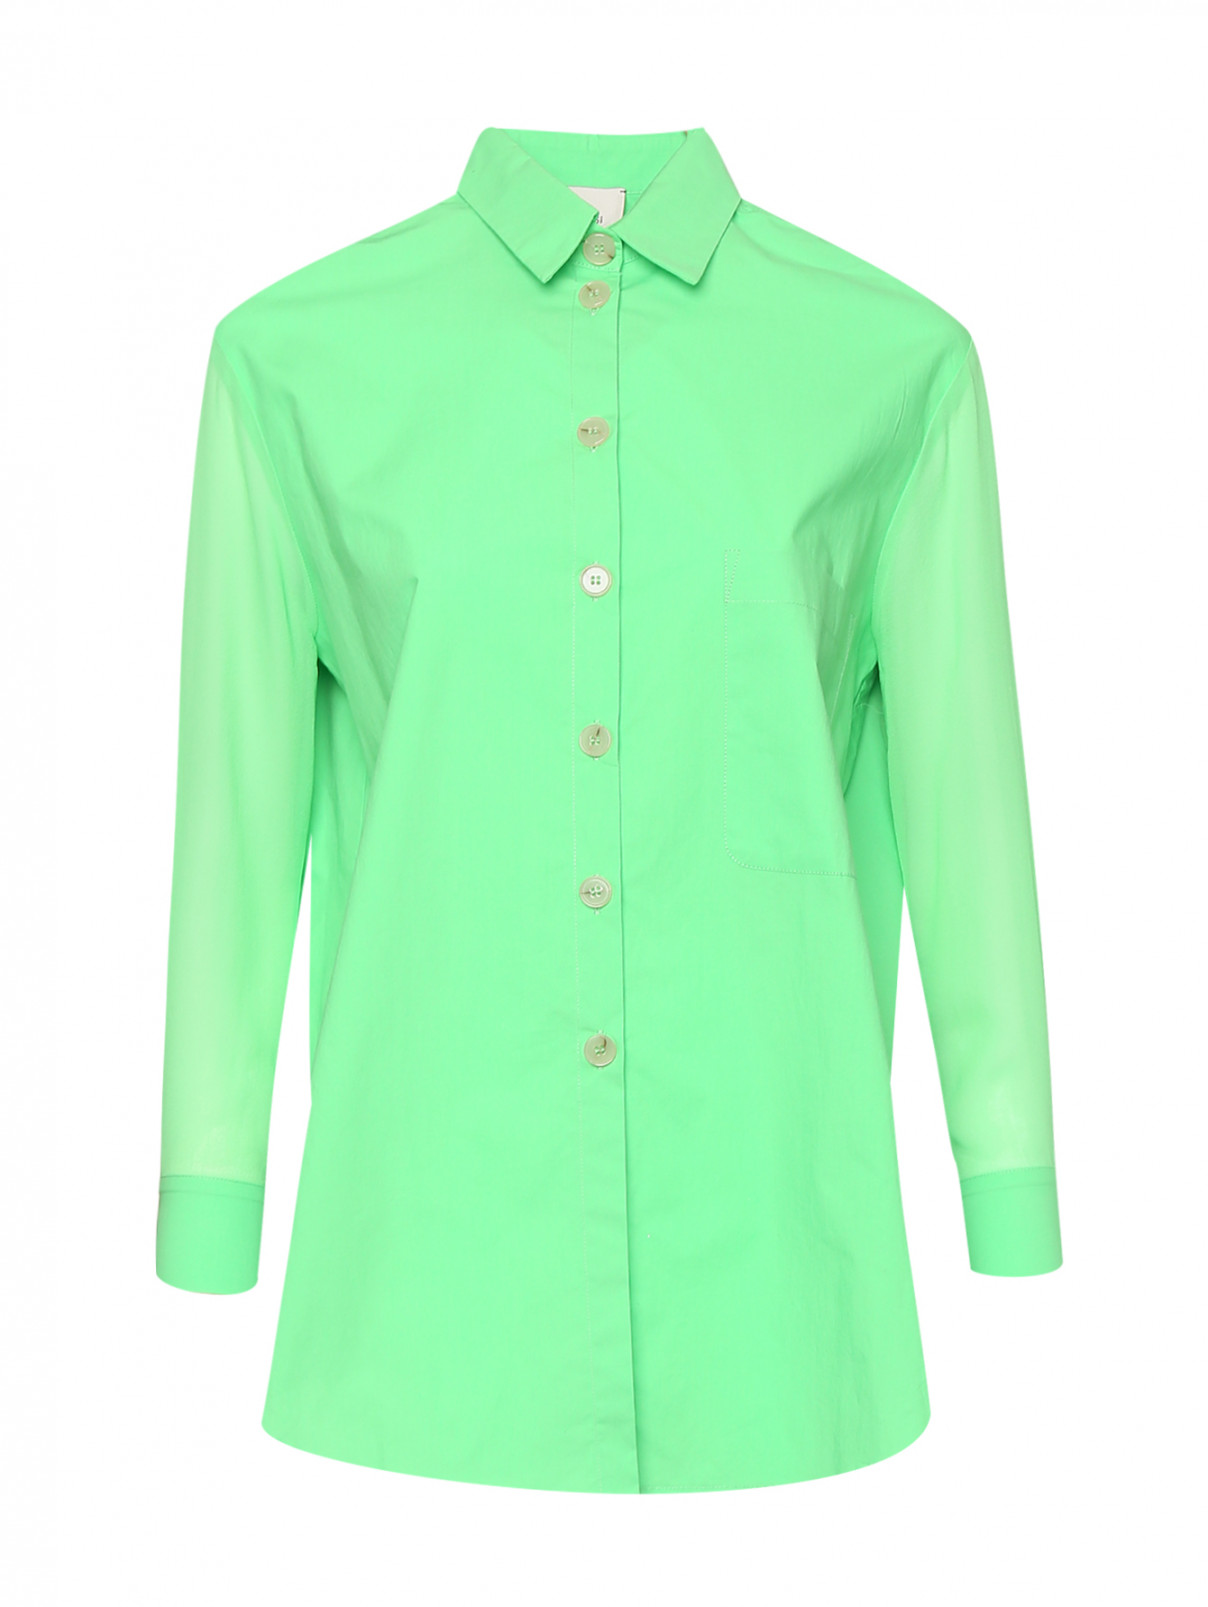 Комбинированная рубашка из хлопка Alysi  –  Общий вид  – Цвет:  Зеленый